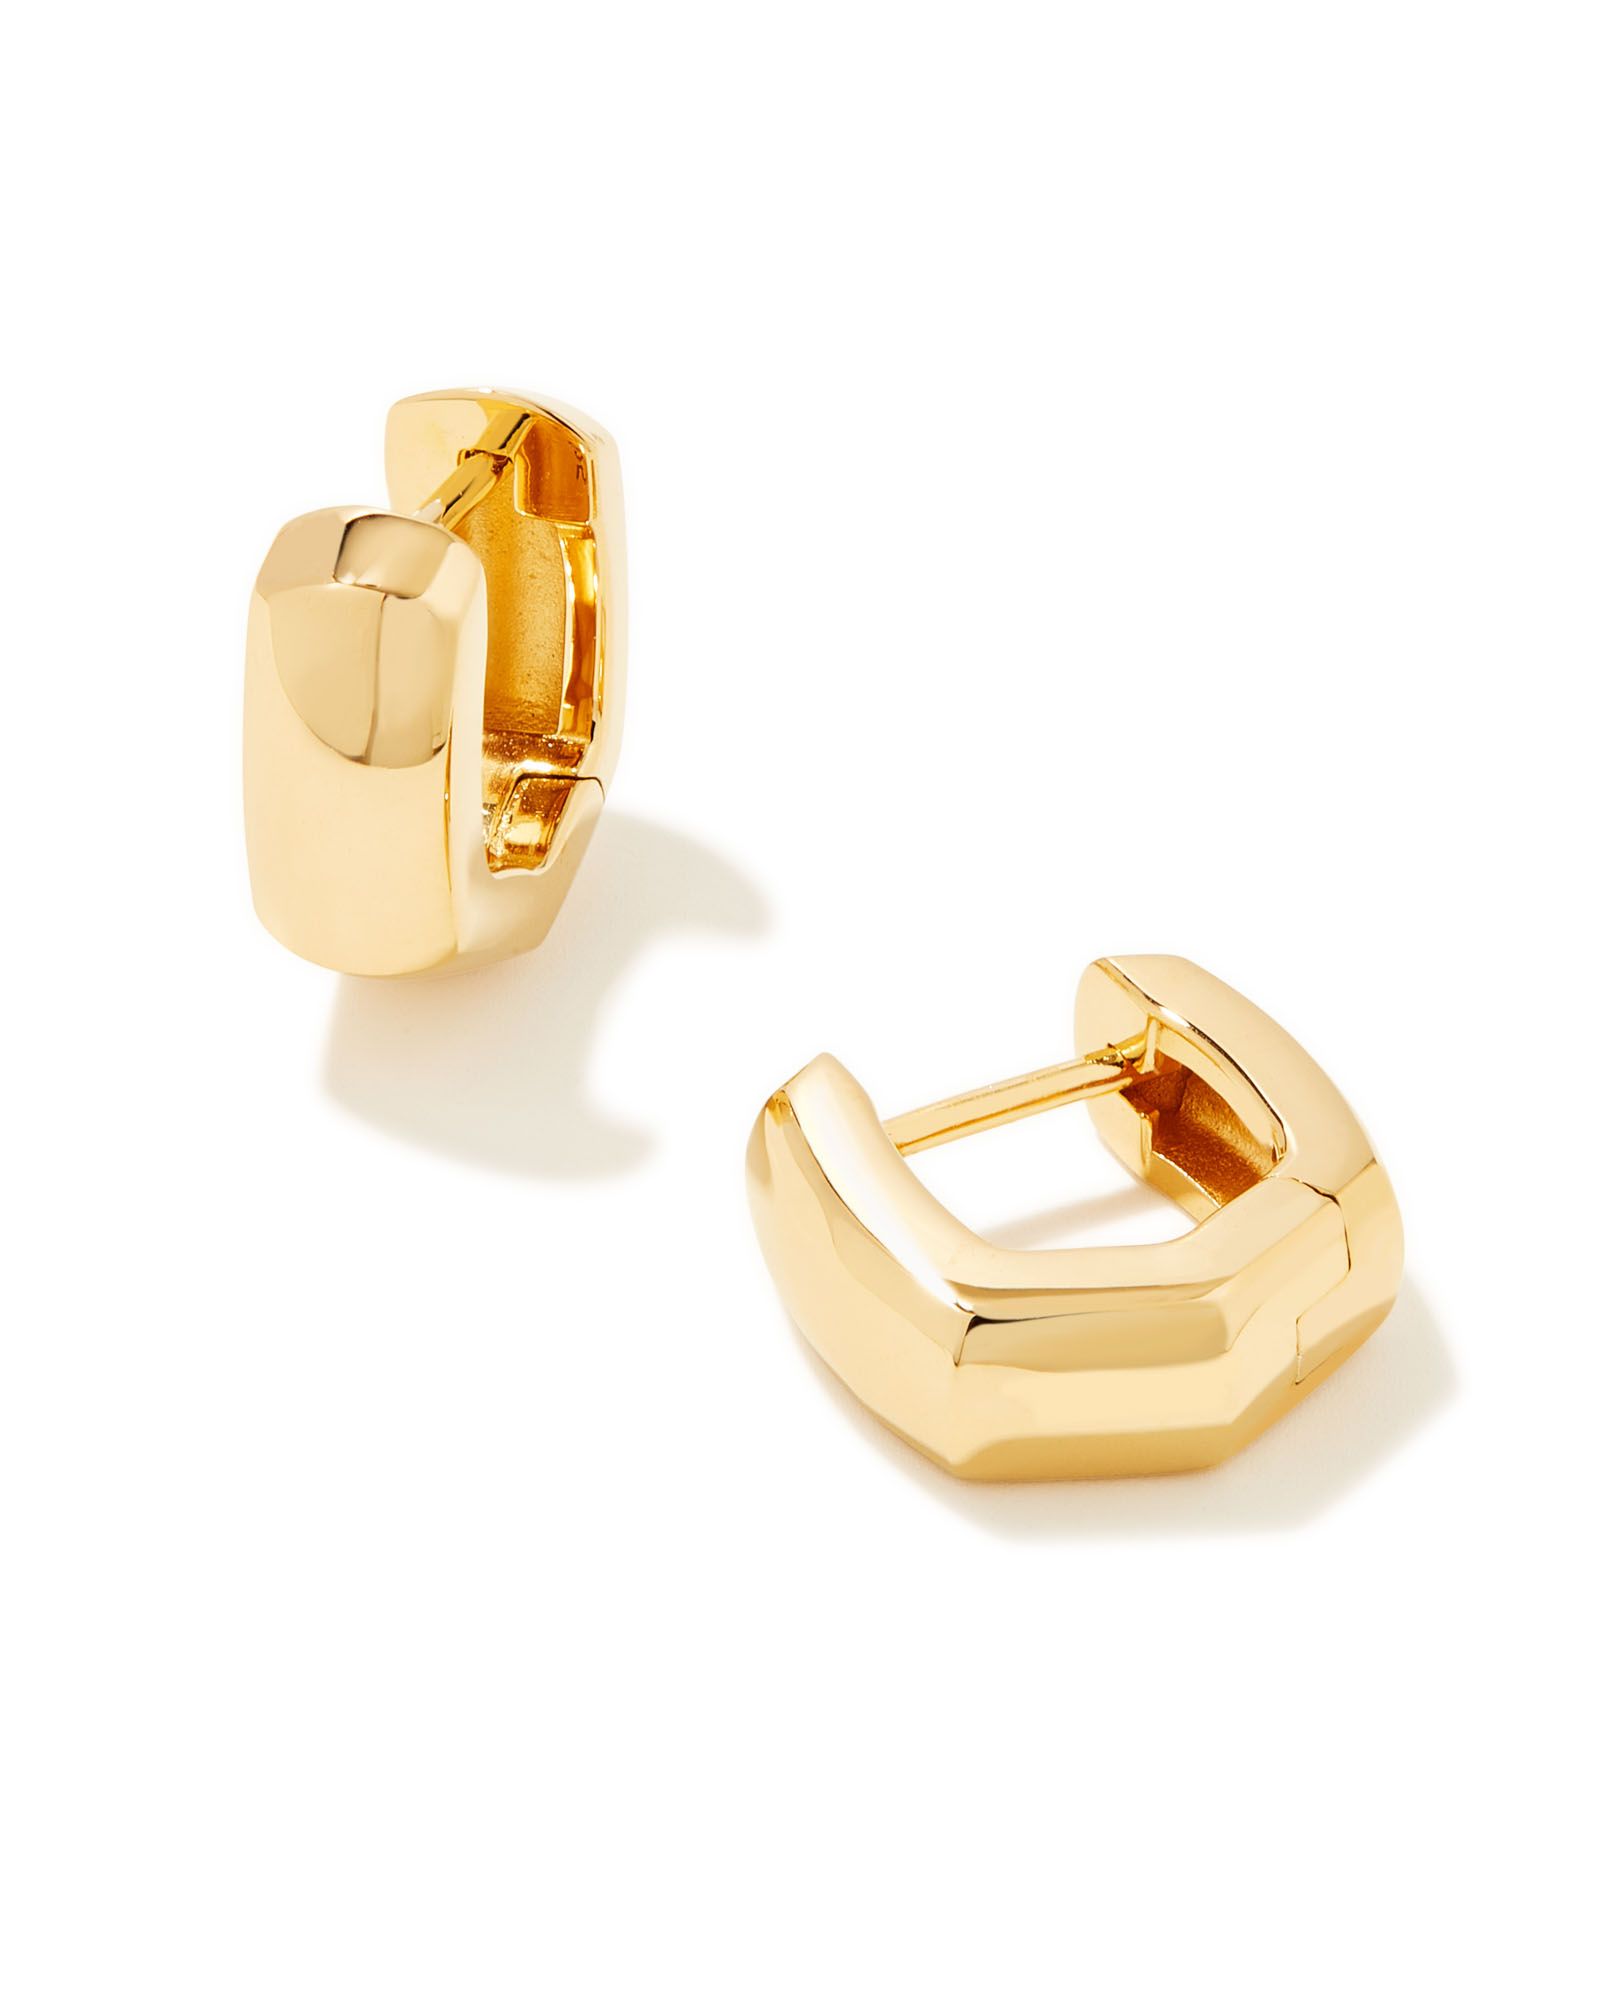 Davie Wide Huggie Earrings in 18k Gold Vermeil | Kendra Scott | Kendra Scott